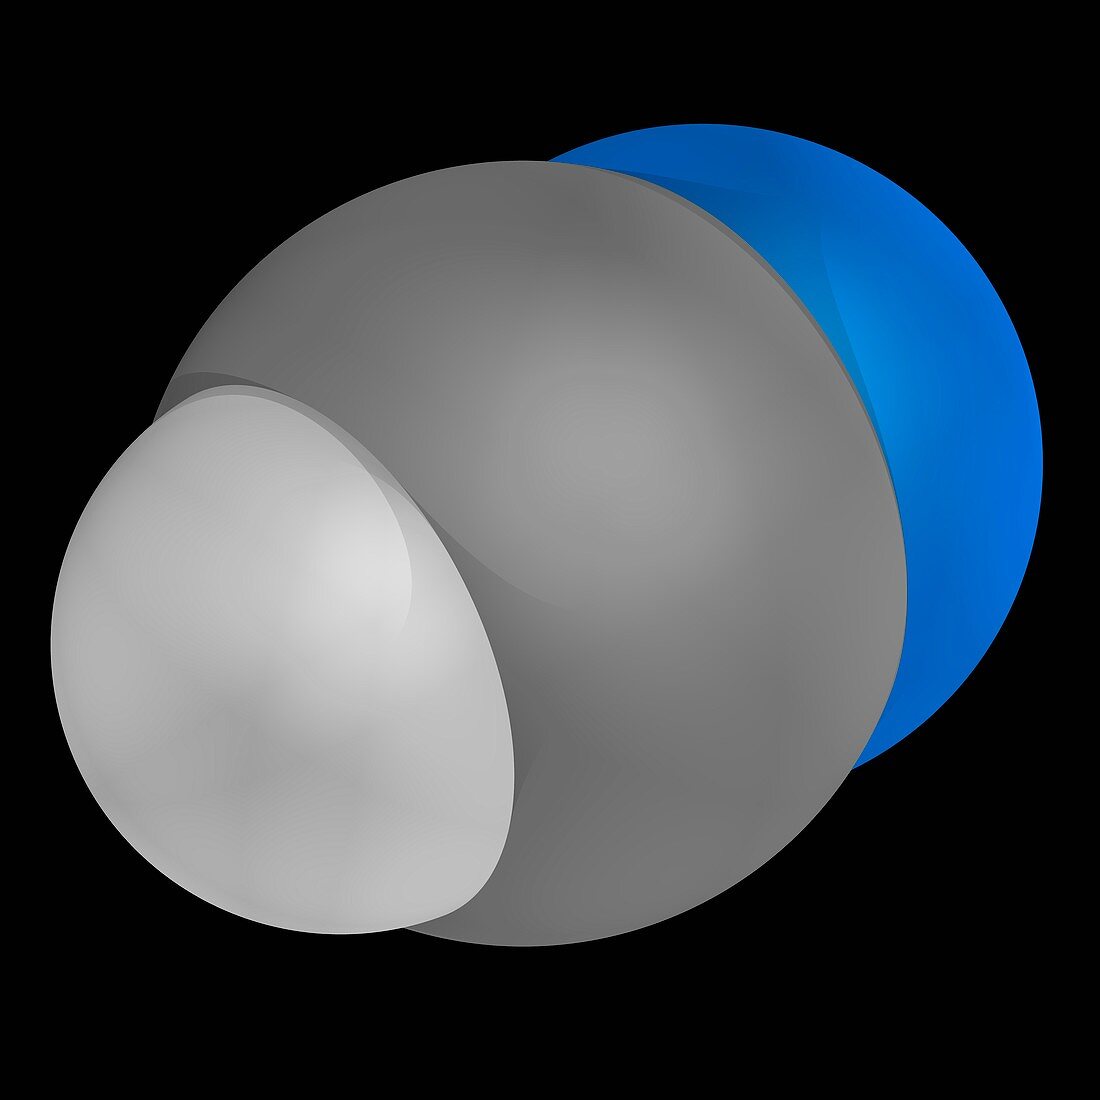 Hydrogen cyanide molecule